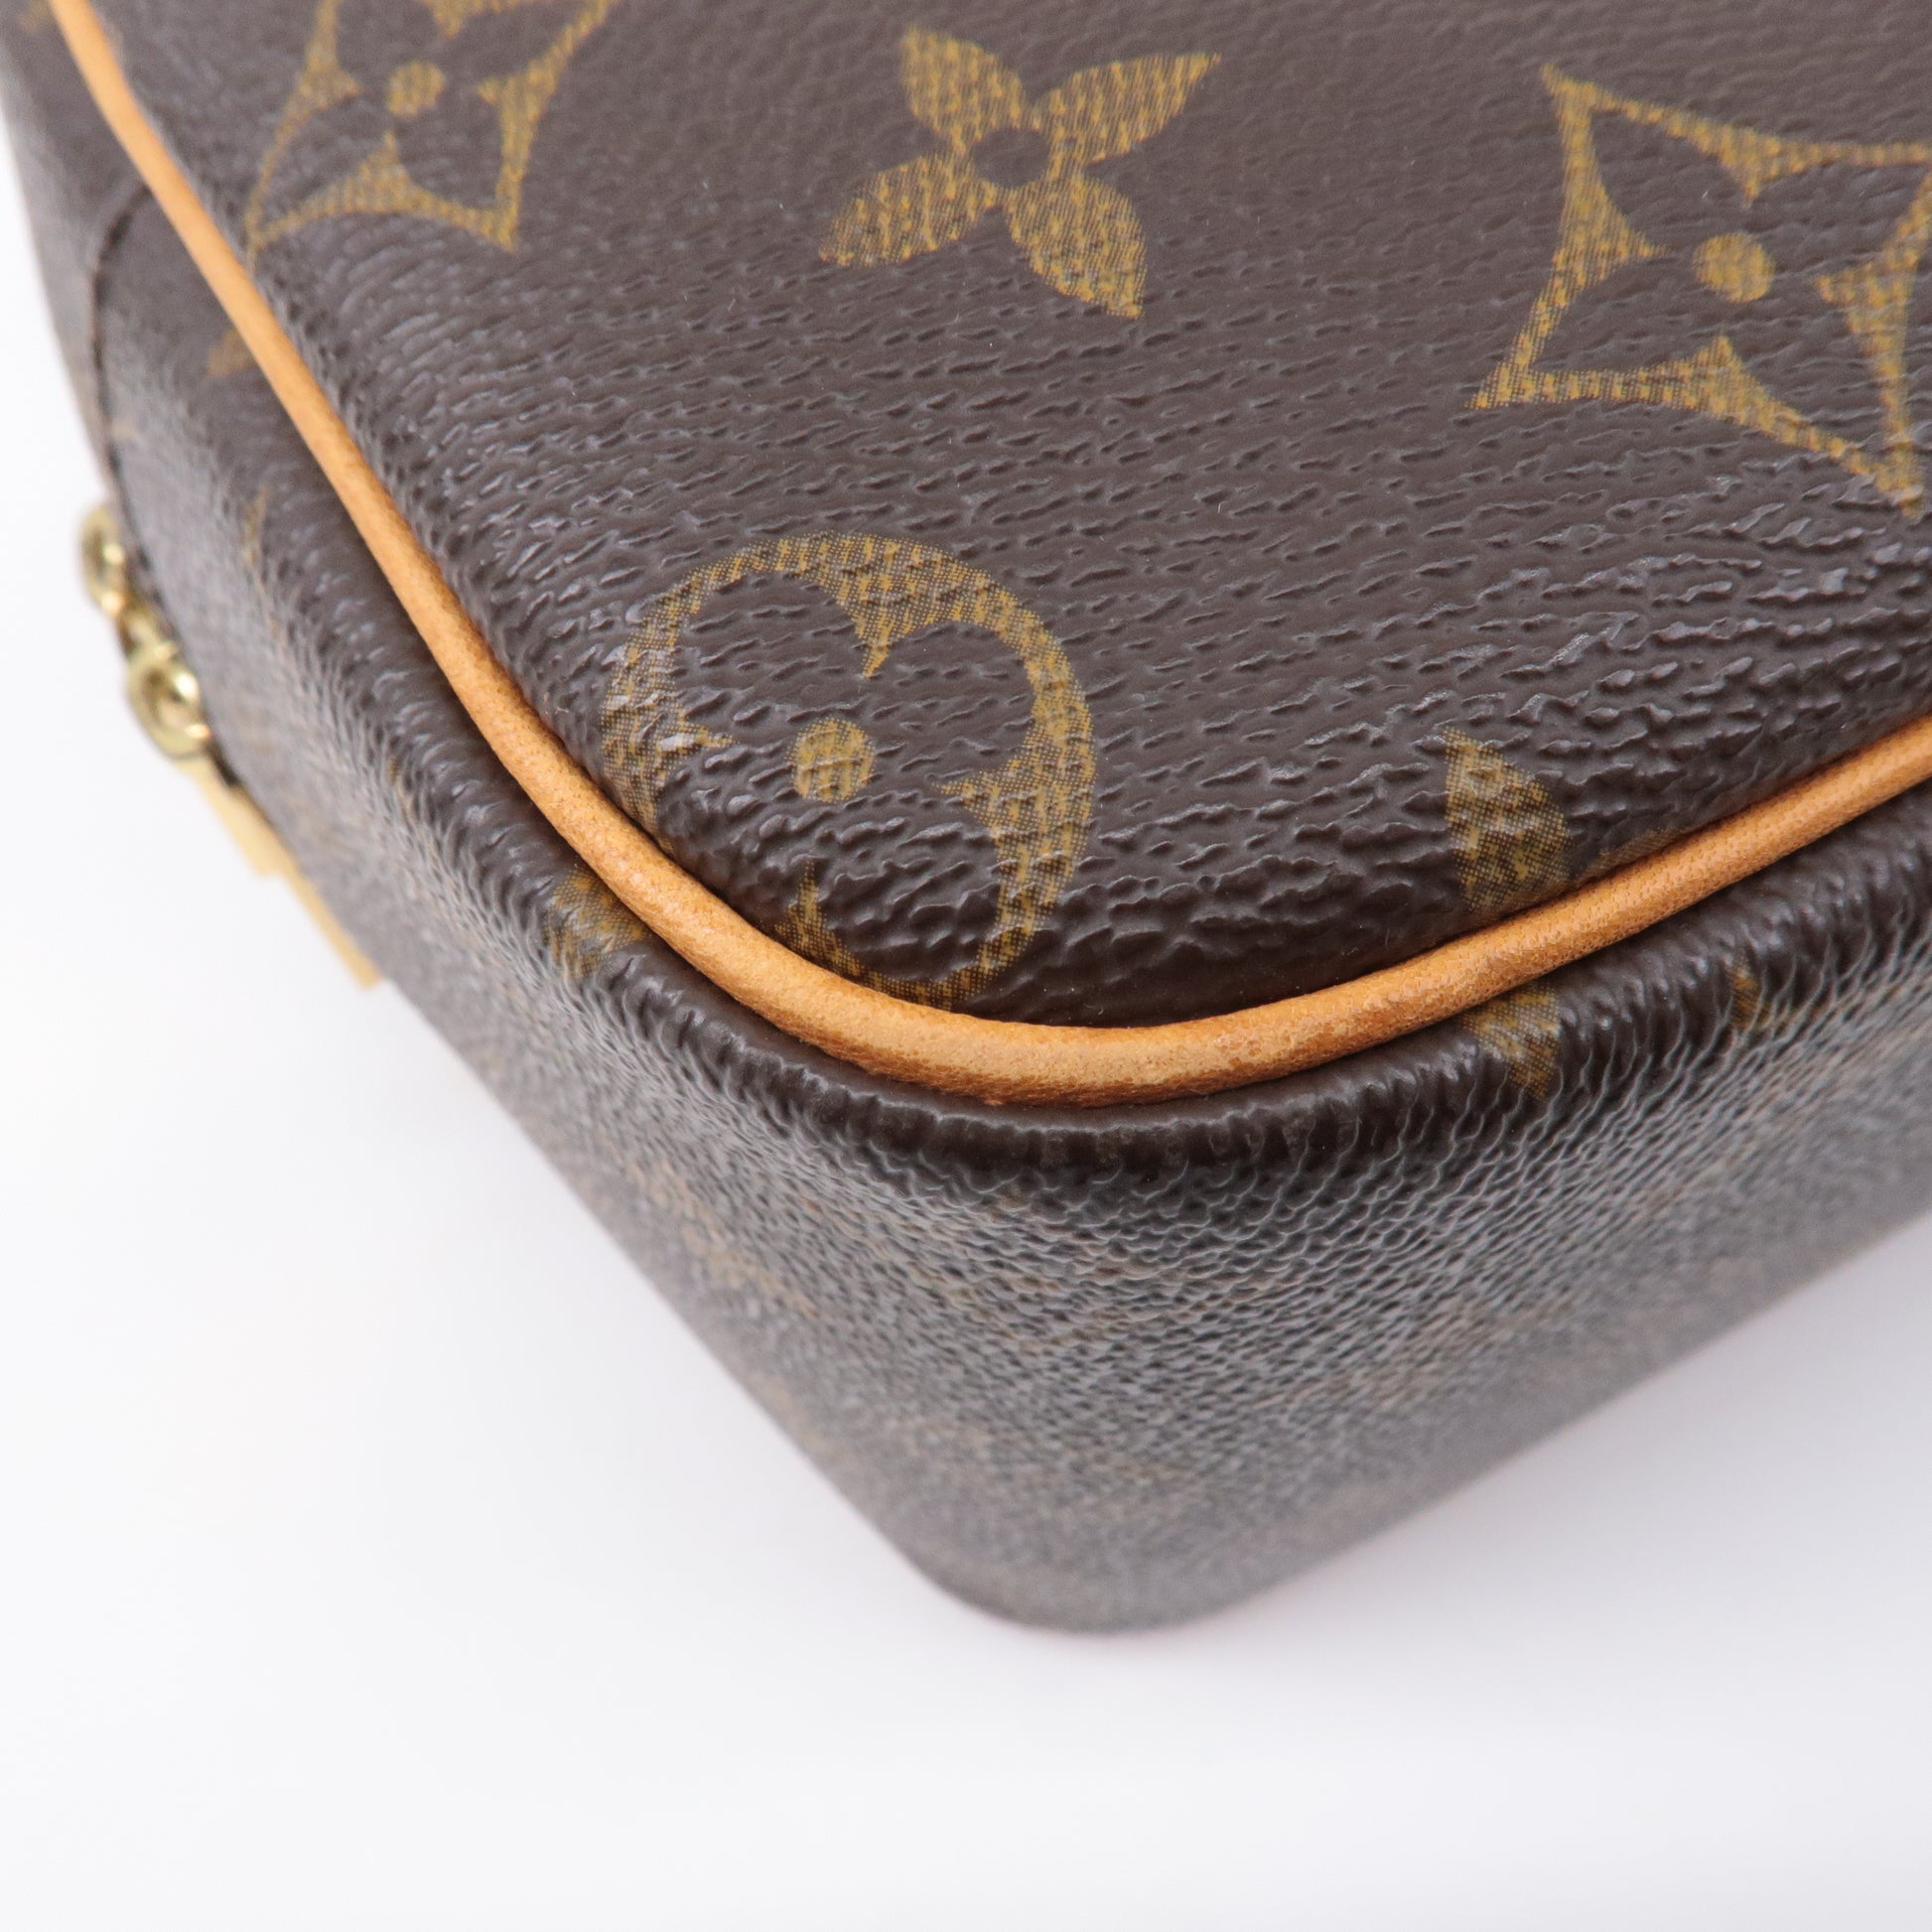 Louis Vuitton - Bandoulière Bag Strap - Monogram Canvas - Women - Luxury